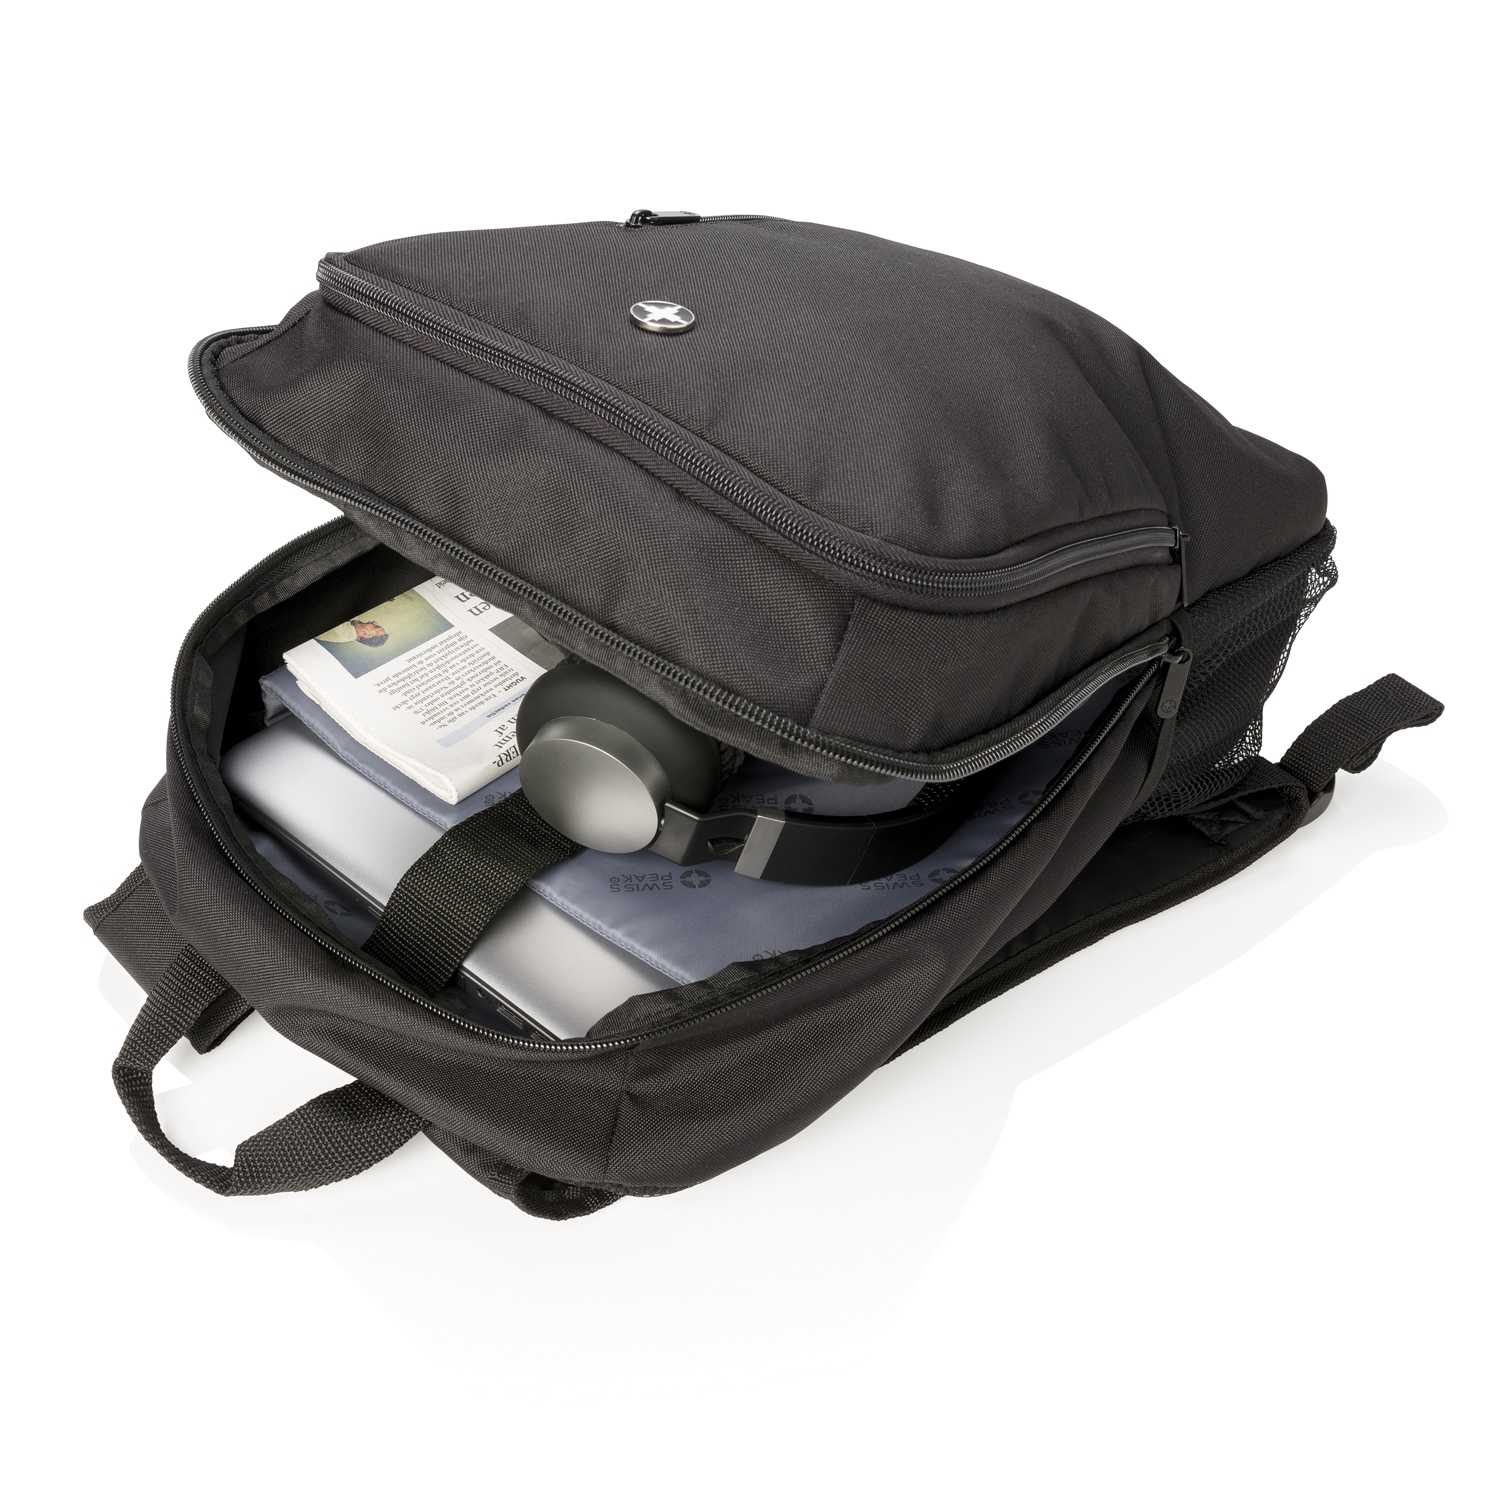 Рюкзак для ноутбука 17" Swiss Peak Business, черный, полиэстер